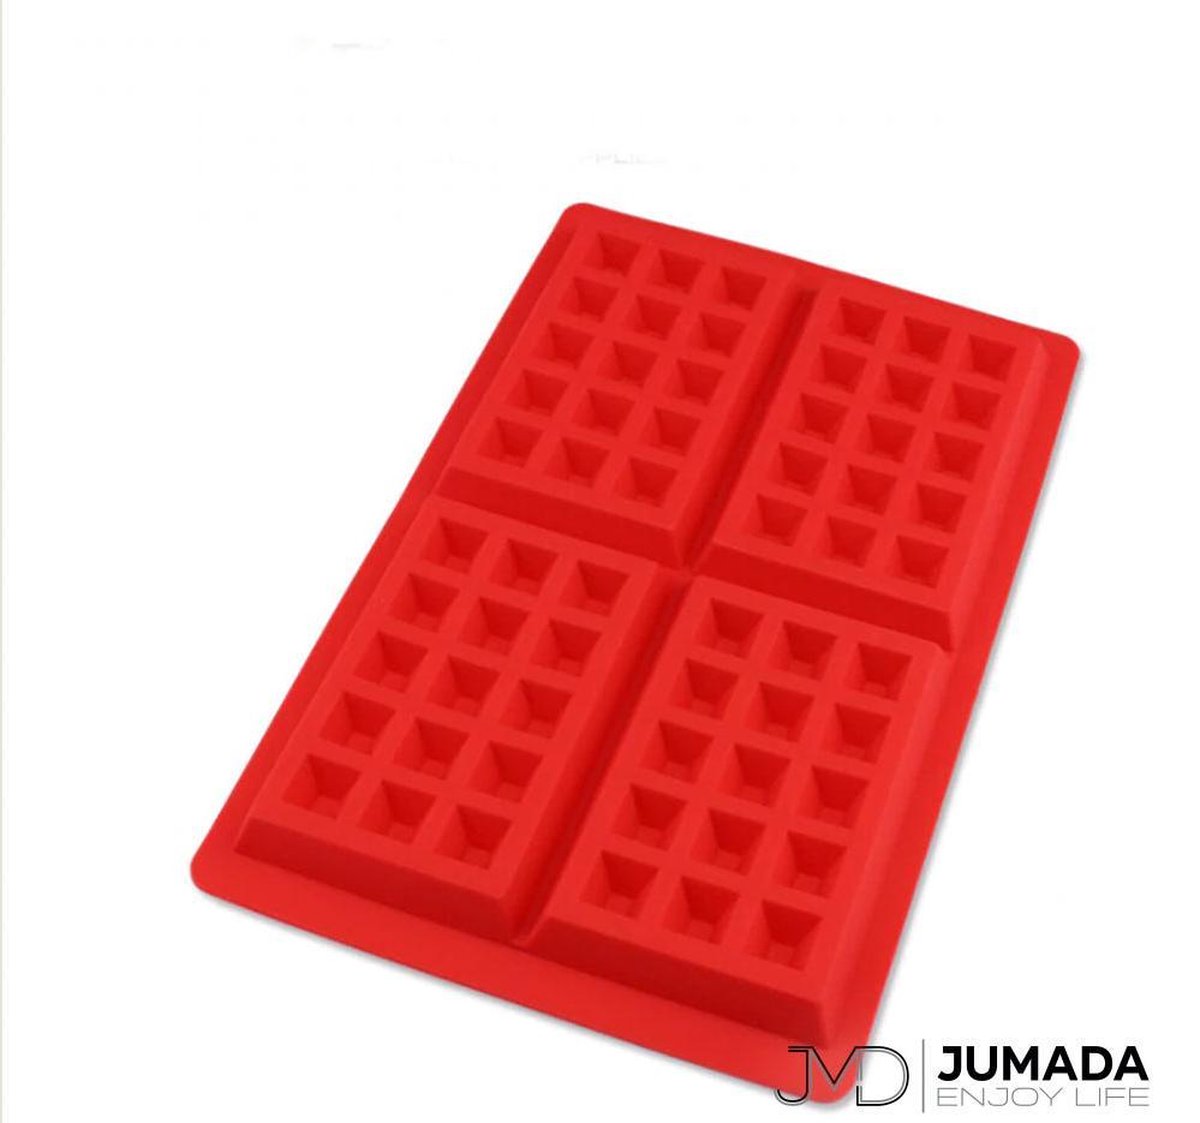 Jumada's Wafelvorm - Wafelijzer - Siliconen Bakvorm - Wafel Mal - Rechthoek